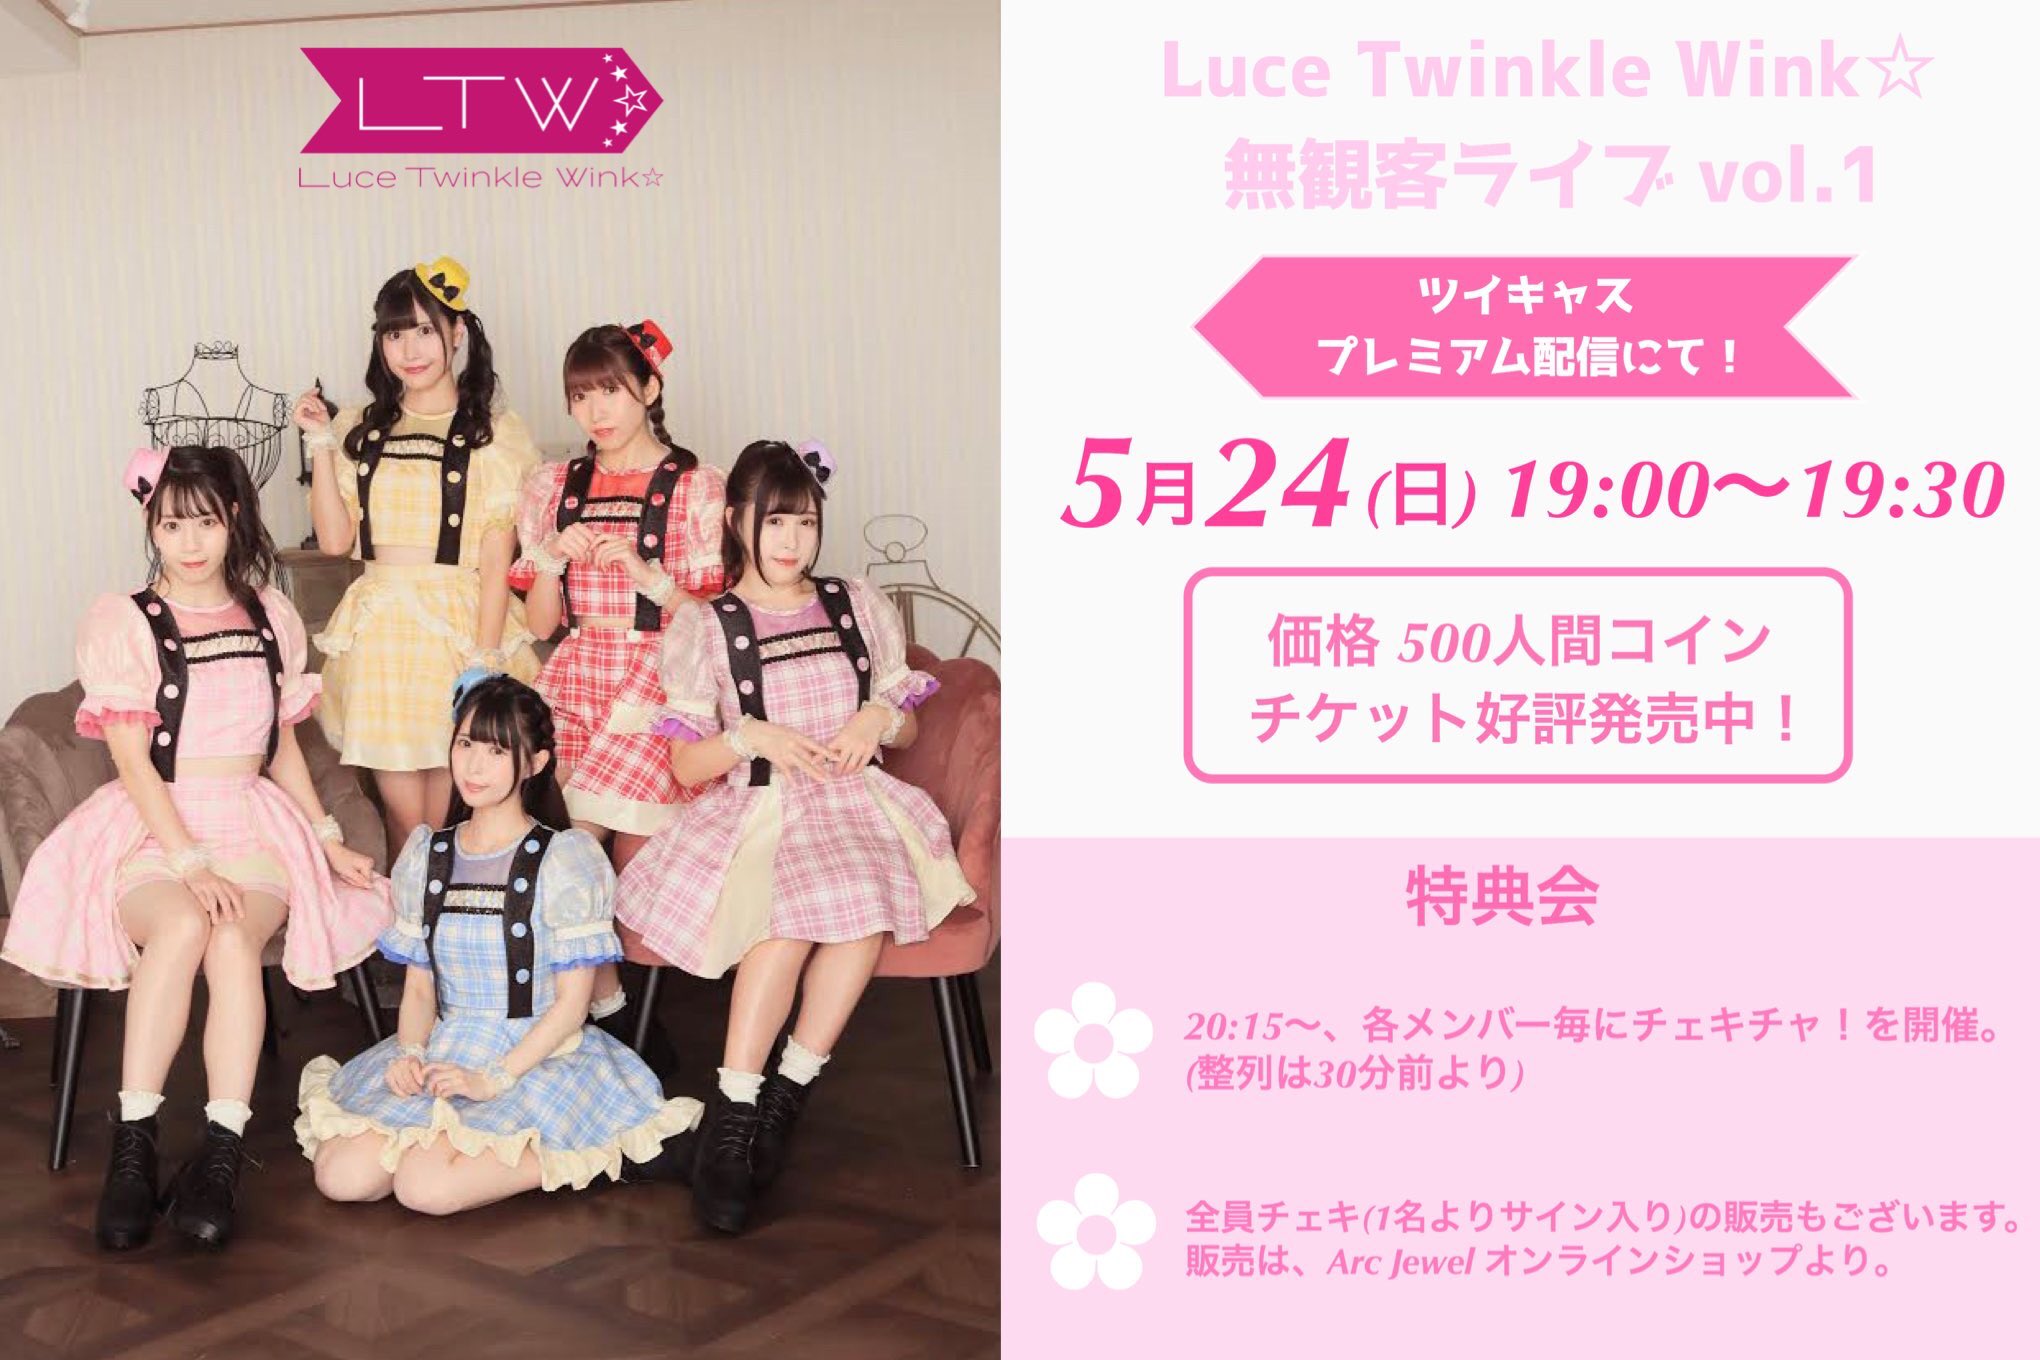 Fukasawa Saki : Luce Twinkle Wink | 深沢紗希 : luce_twinkle_wink☆